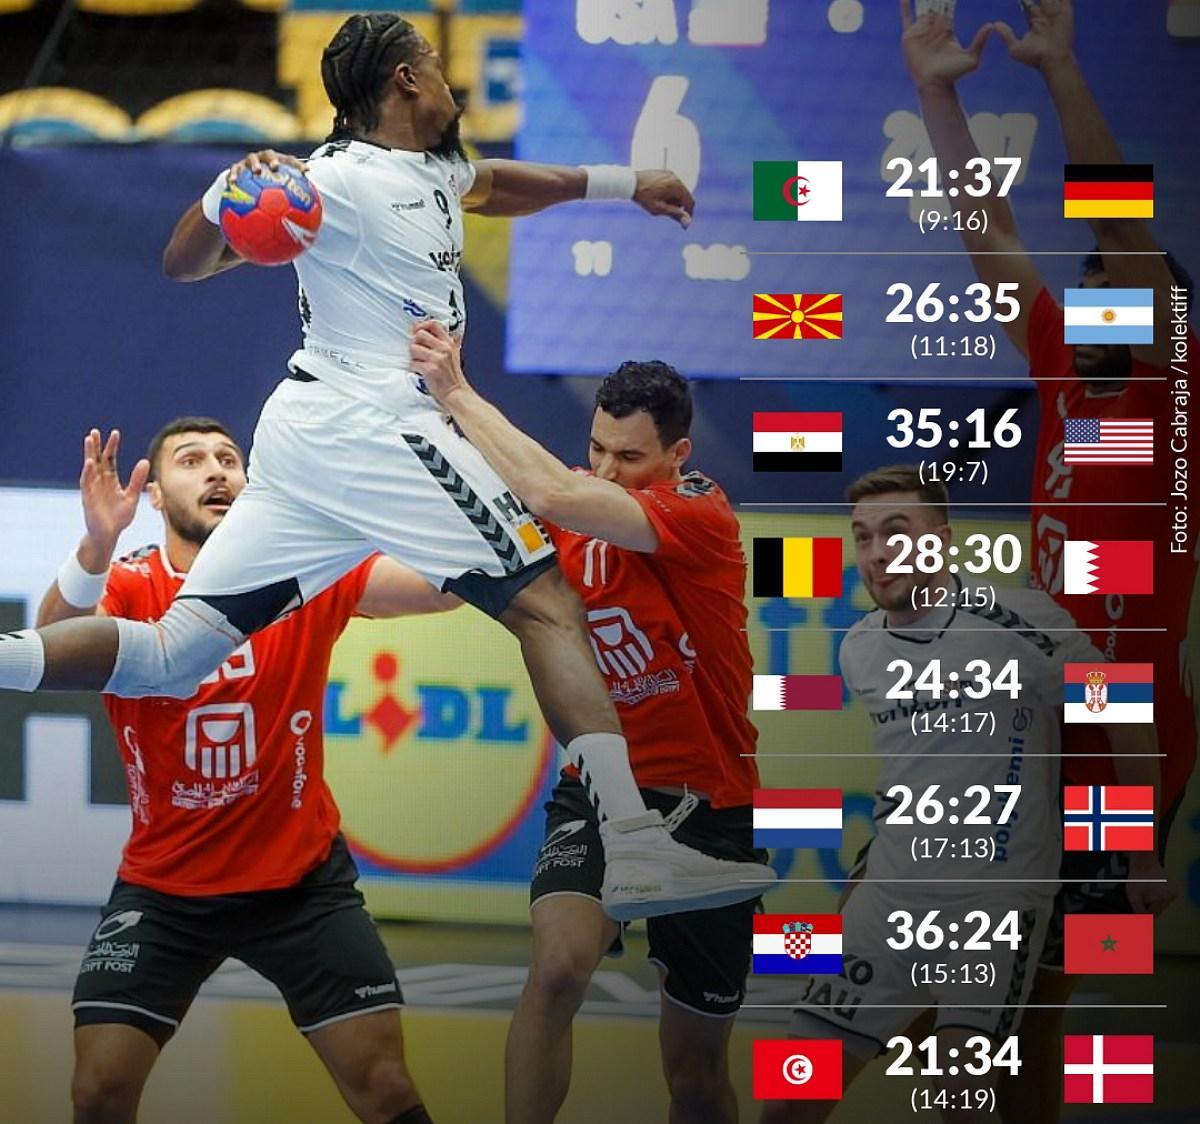 Handball-WM Heute Start in die Hauptunde mit unterschiedlichen Ausgangslagen